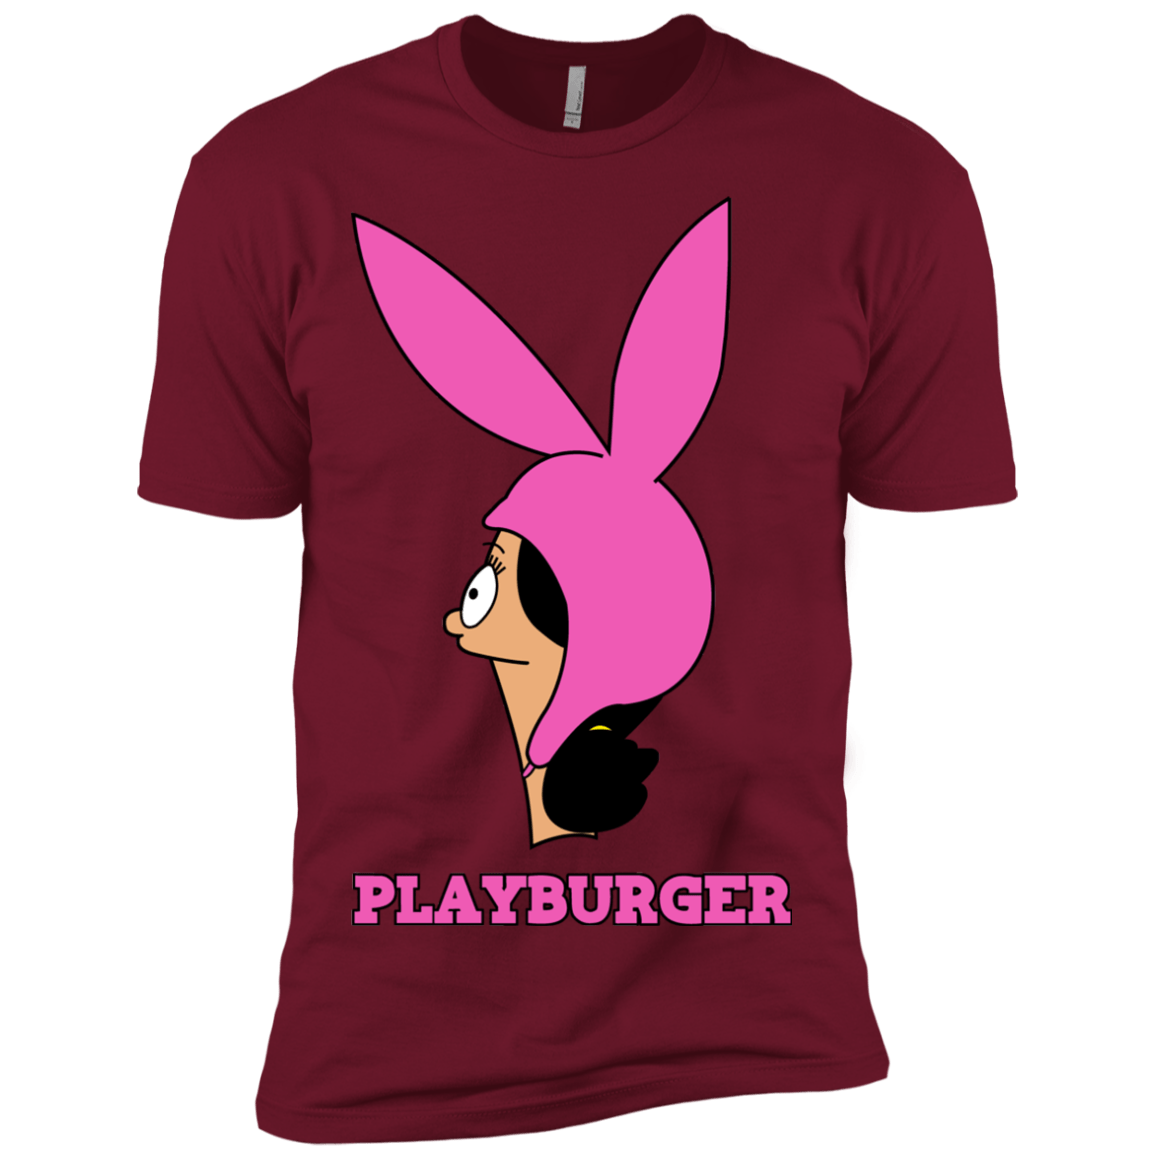 T-Shirts Cardinal / X-Small Playburger Men's Premium T-Shirt